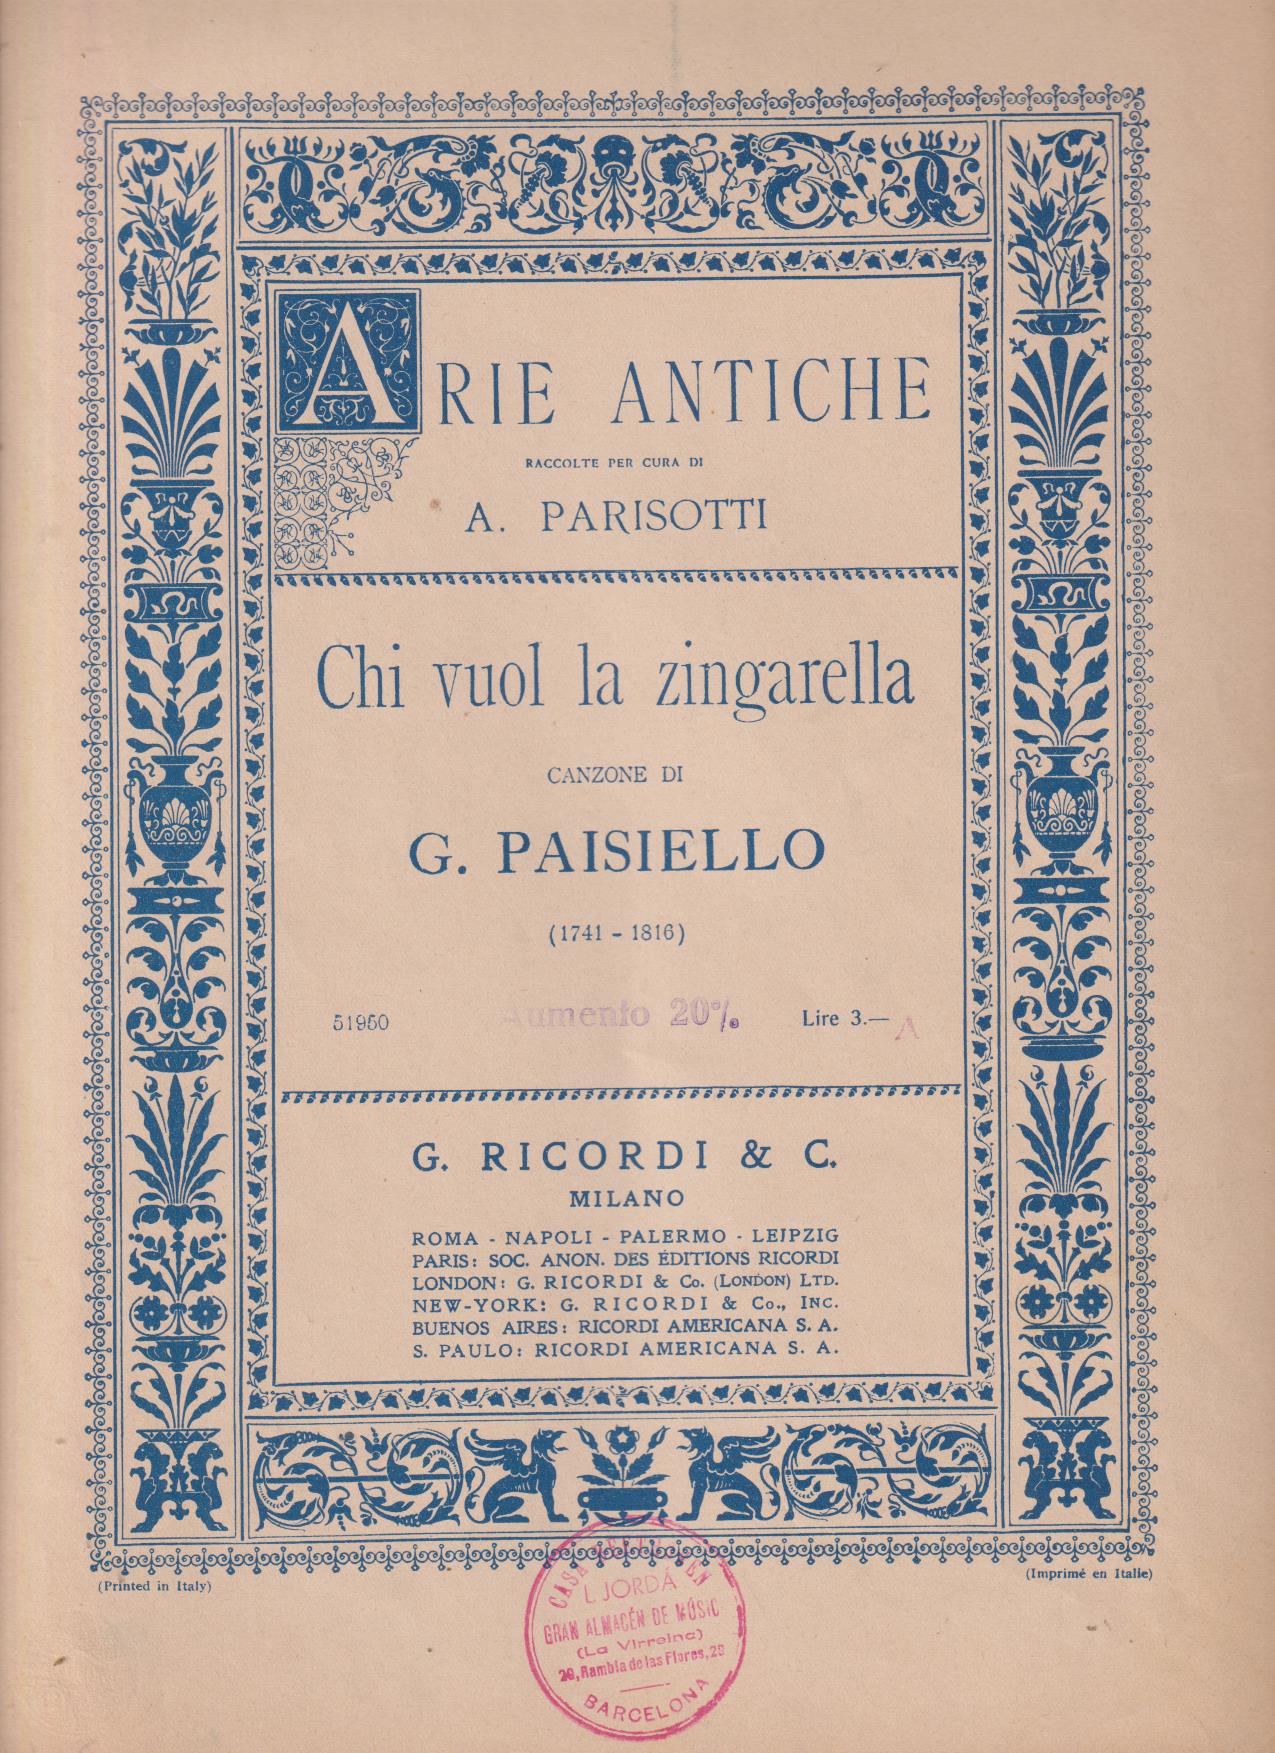 Arie Antiche. A. Parisotti. Chi vuol la zingarella di G. Paisiello (32x23) 4 páginas